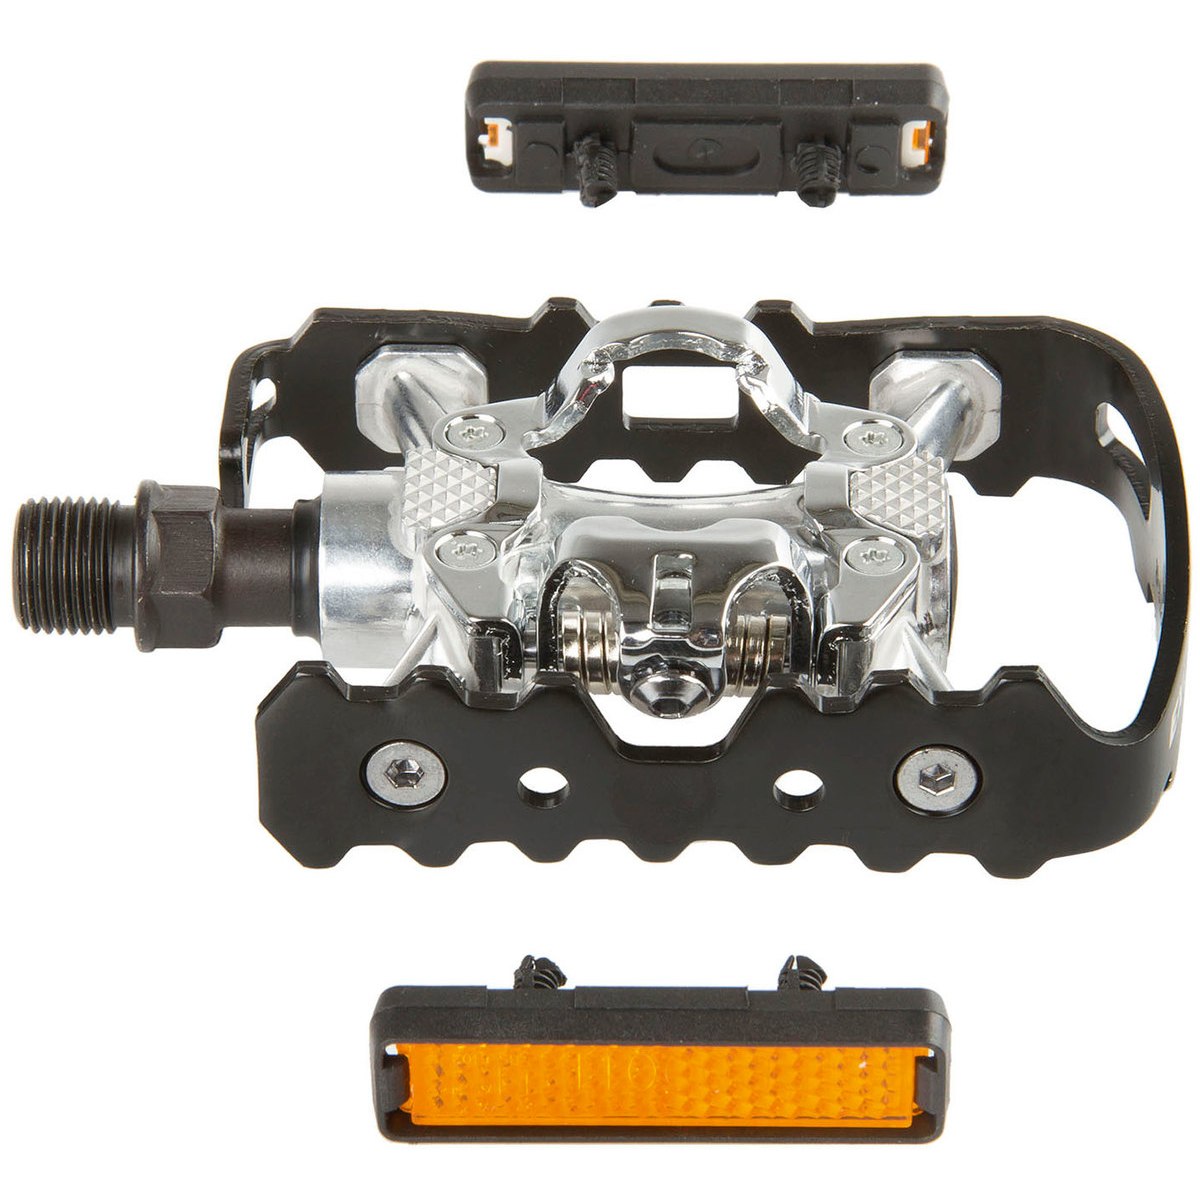 Image of Exustar E-PM818 Triple Interface Pedal - black